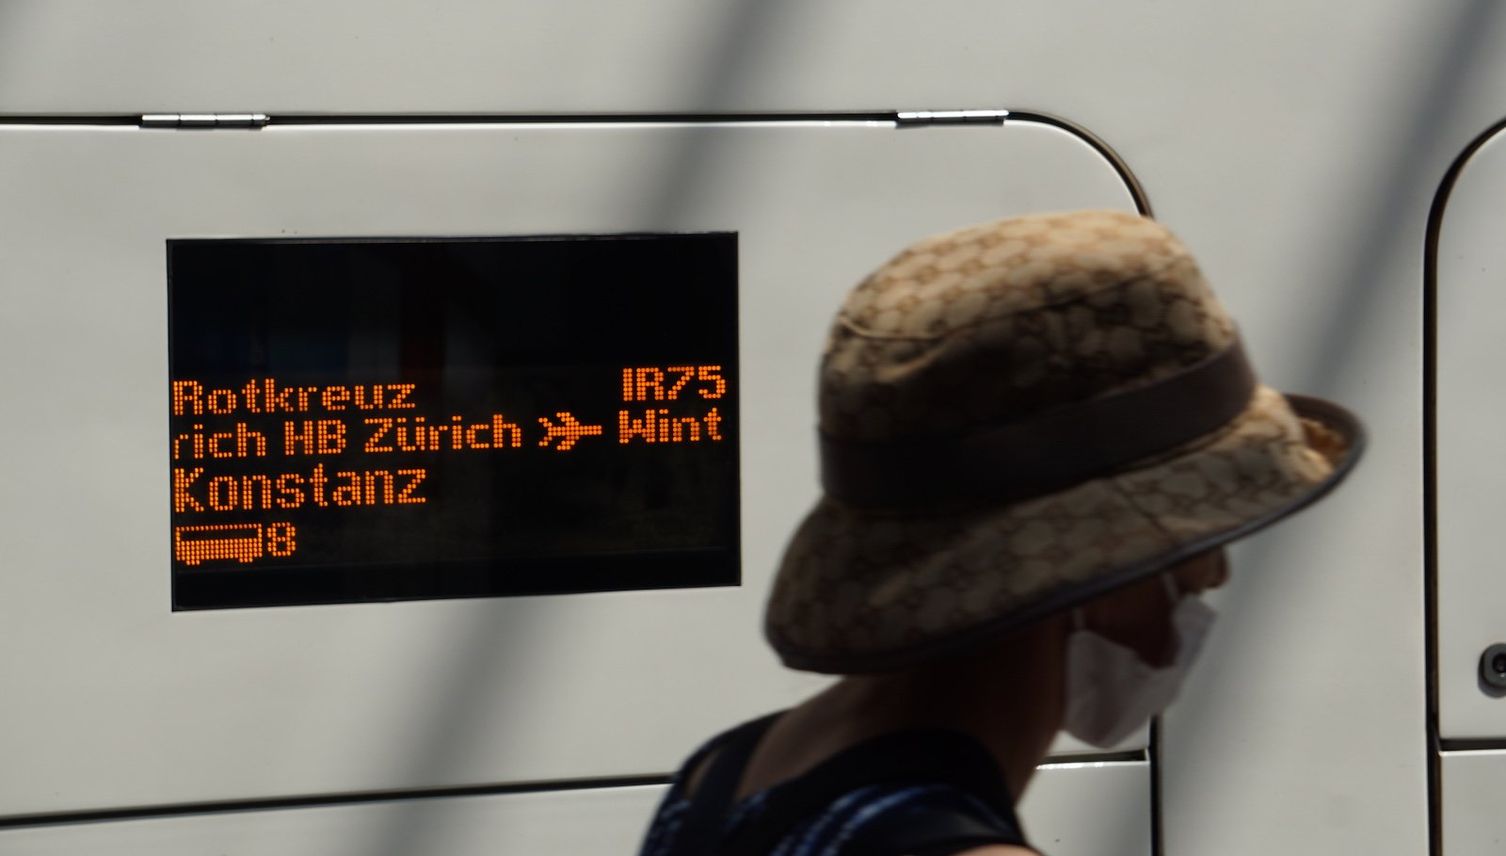 Direktzug zum Flughafen: Luzern muss bittere Pille schlucken